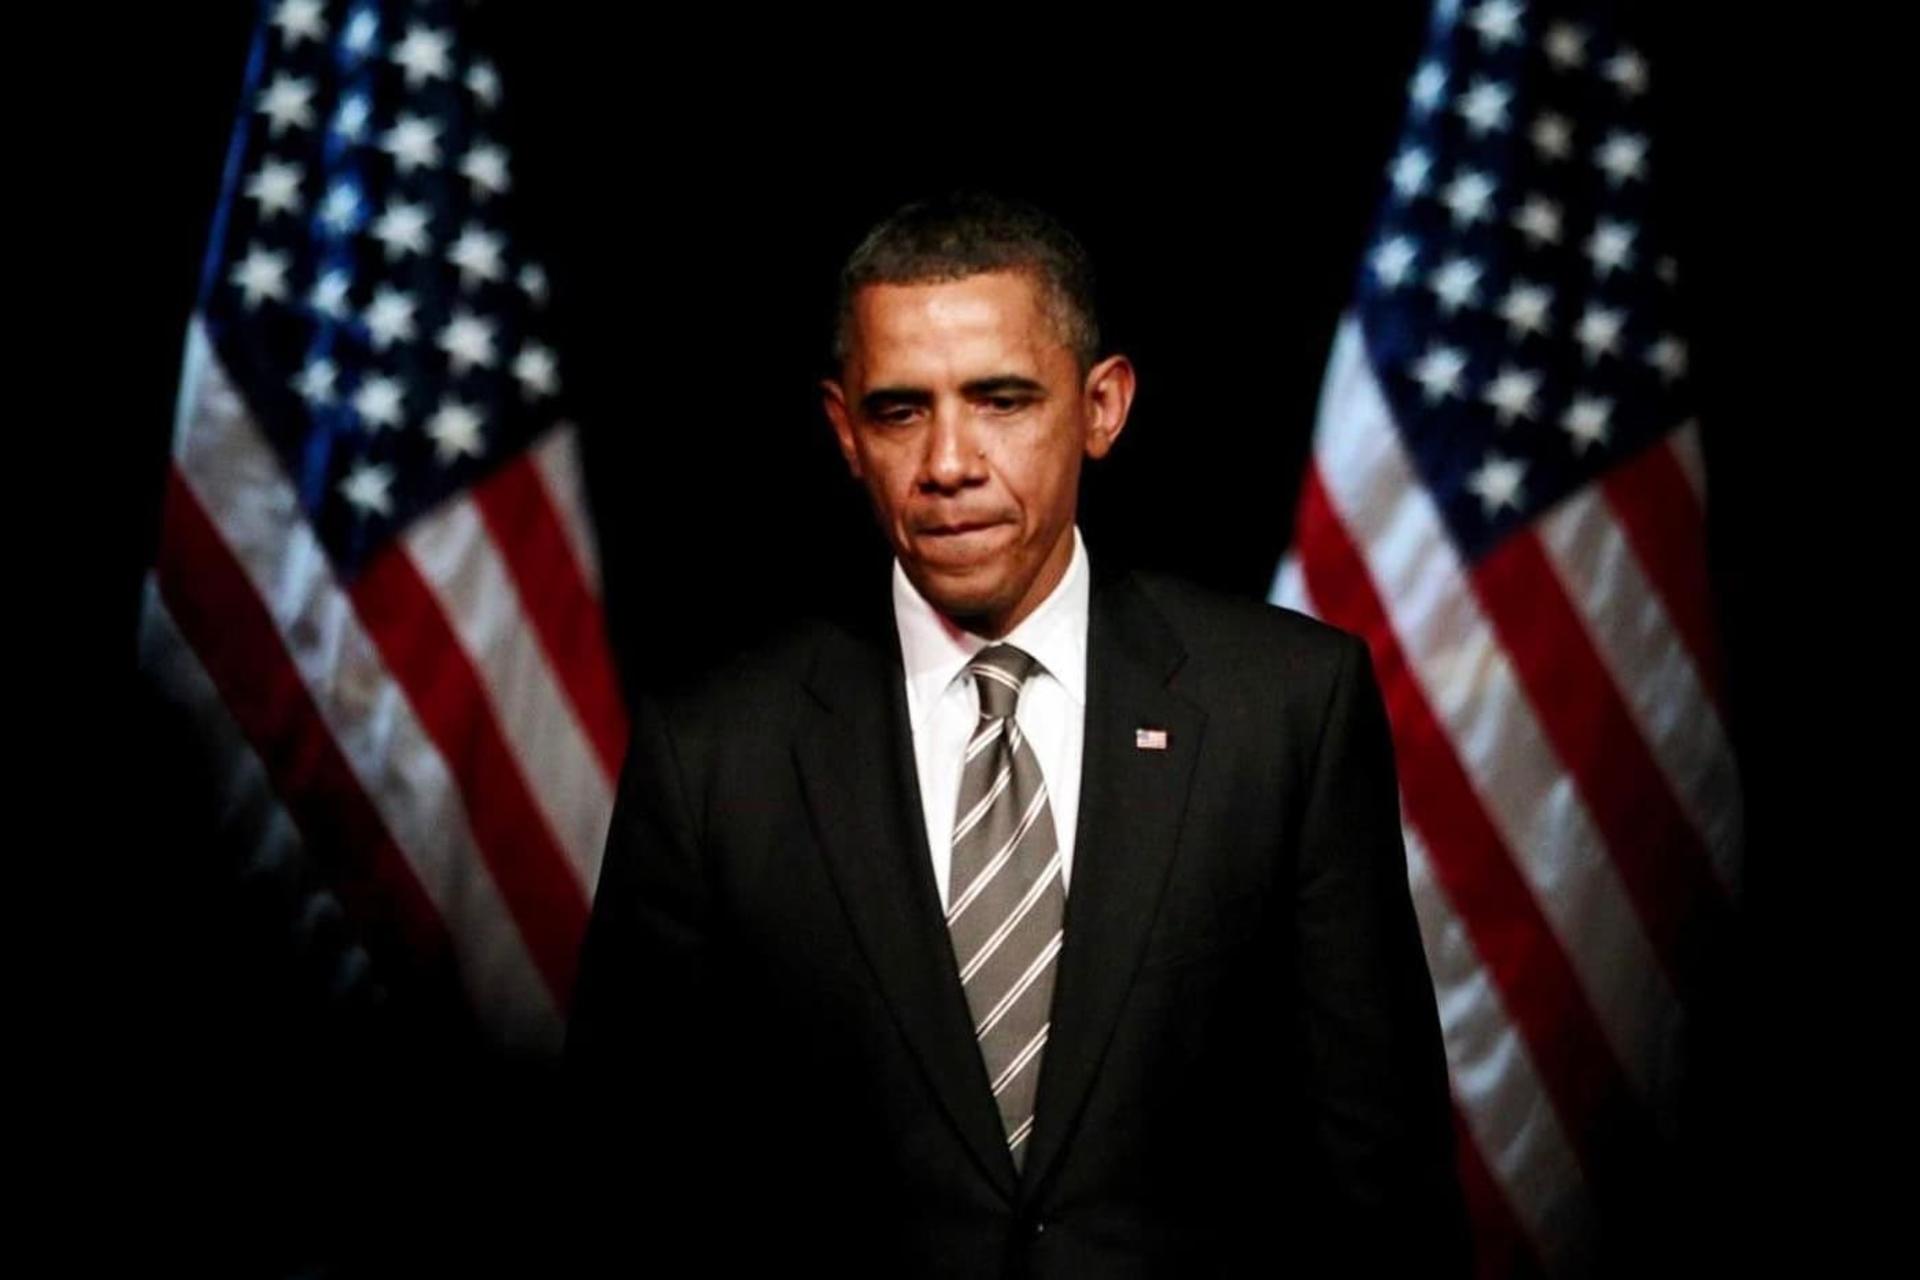 مرجع متخصصين ايران باراك اوباما / Barack Obama دربرابر دو پرچم آمريكا